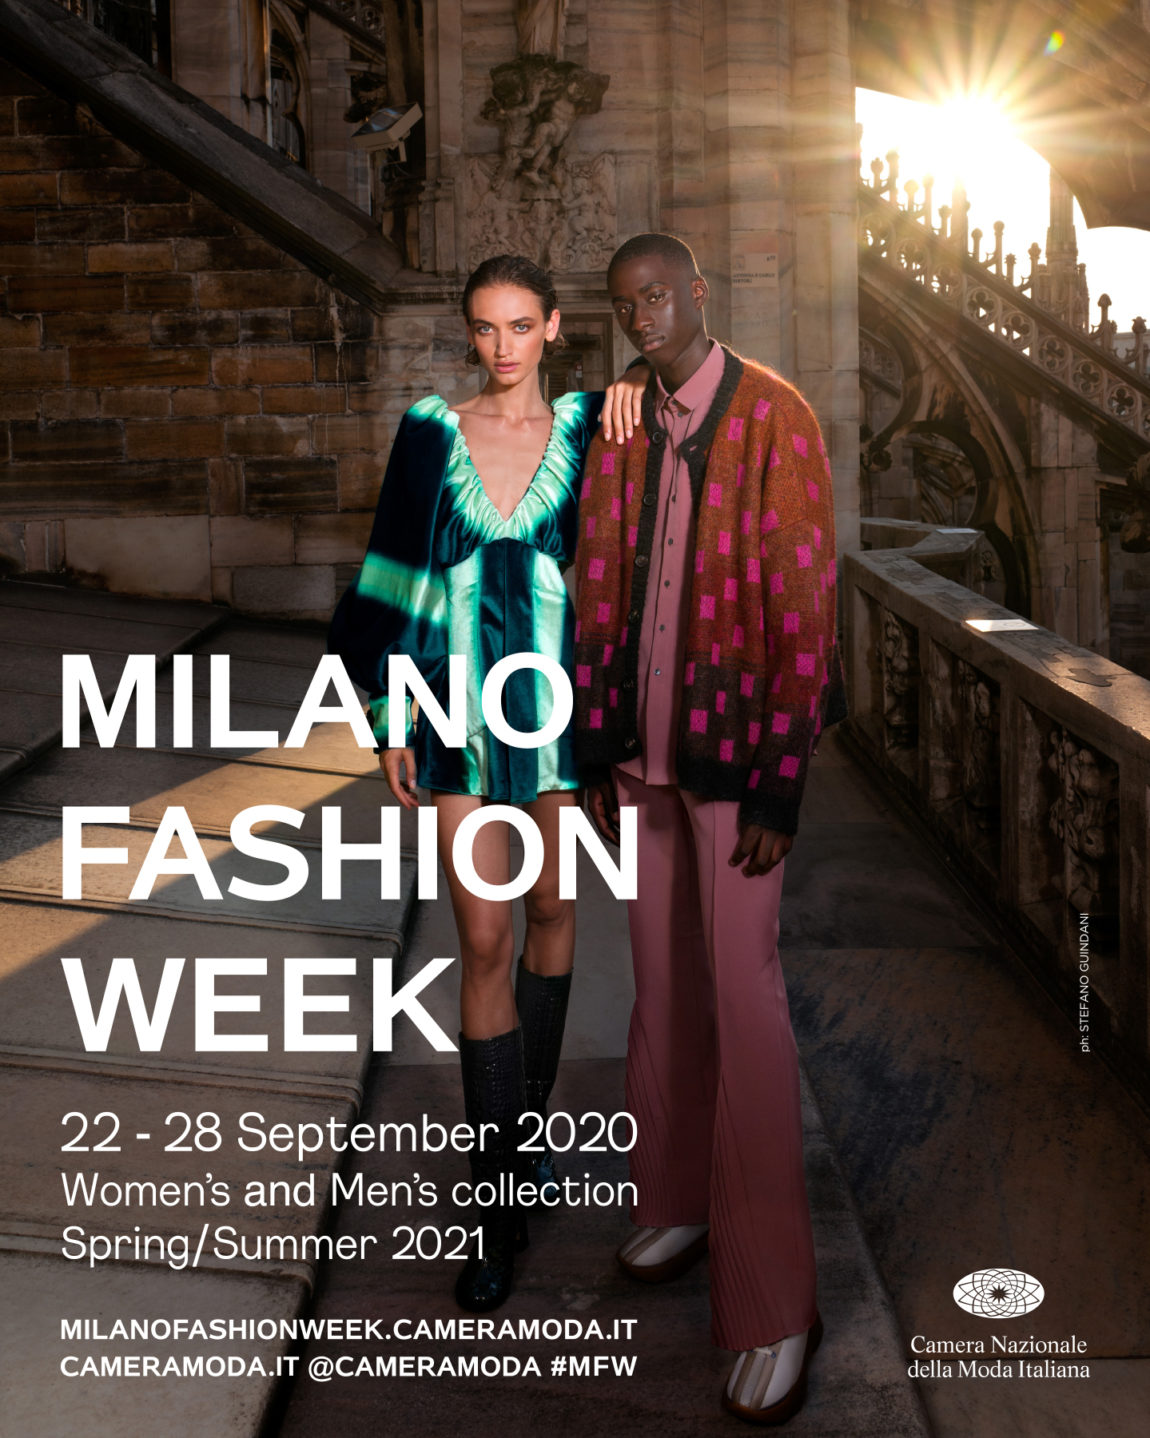 2021 Milan Fashion Week - February 8, 2021 - WEMODEL USA